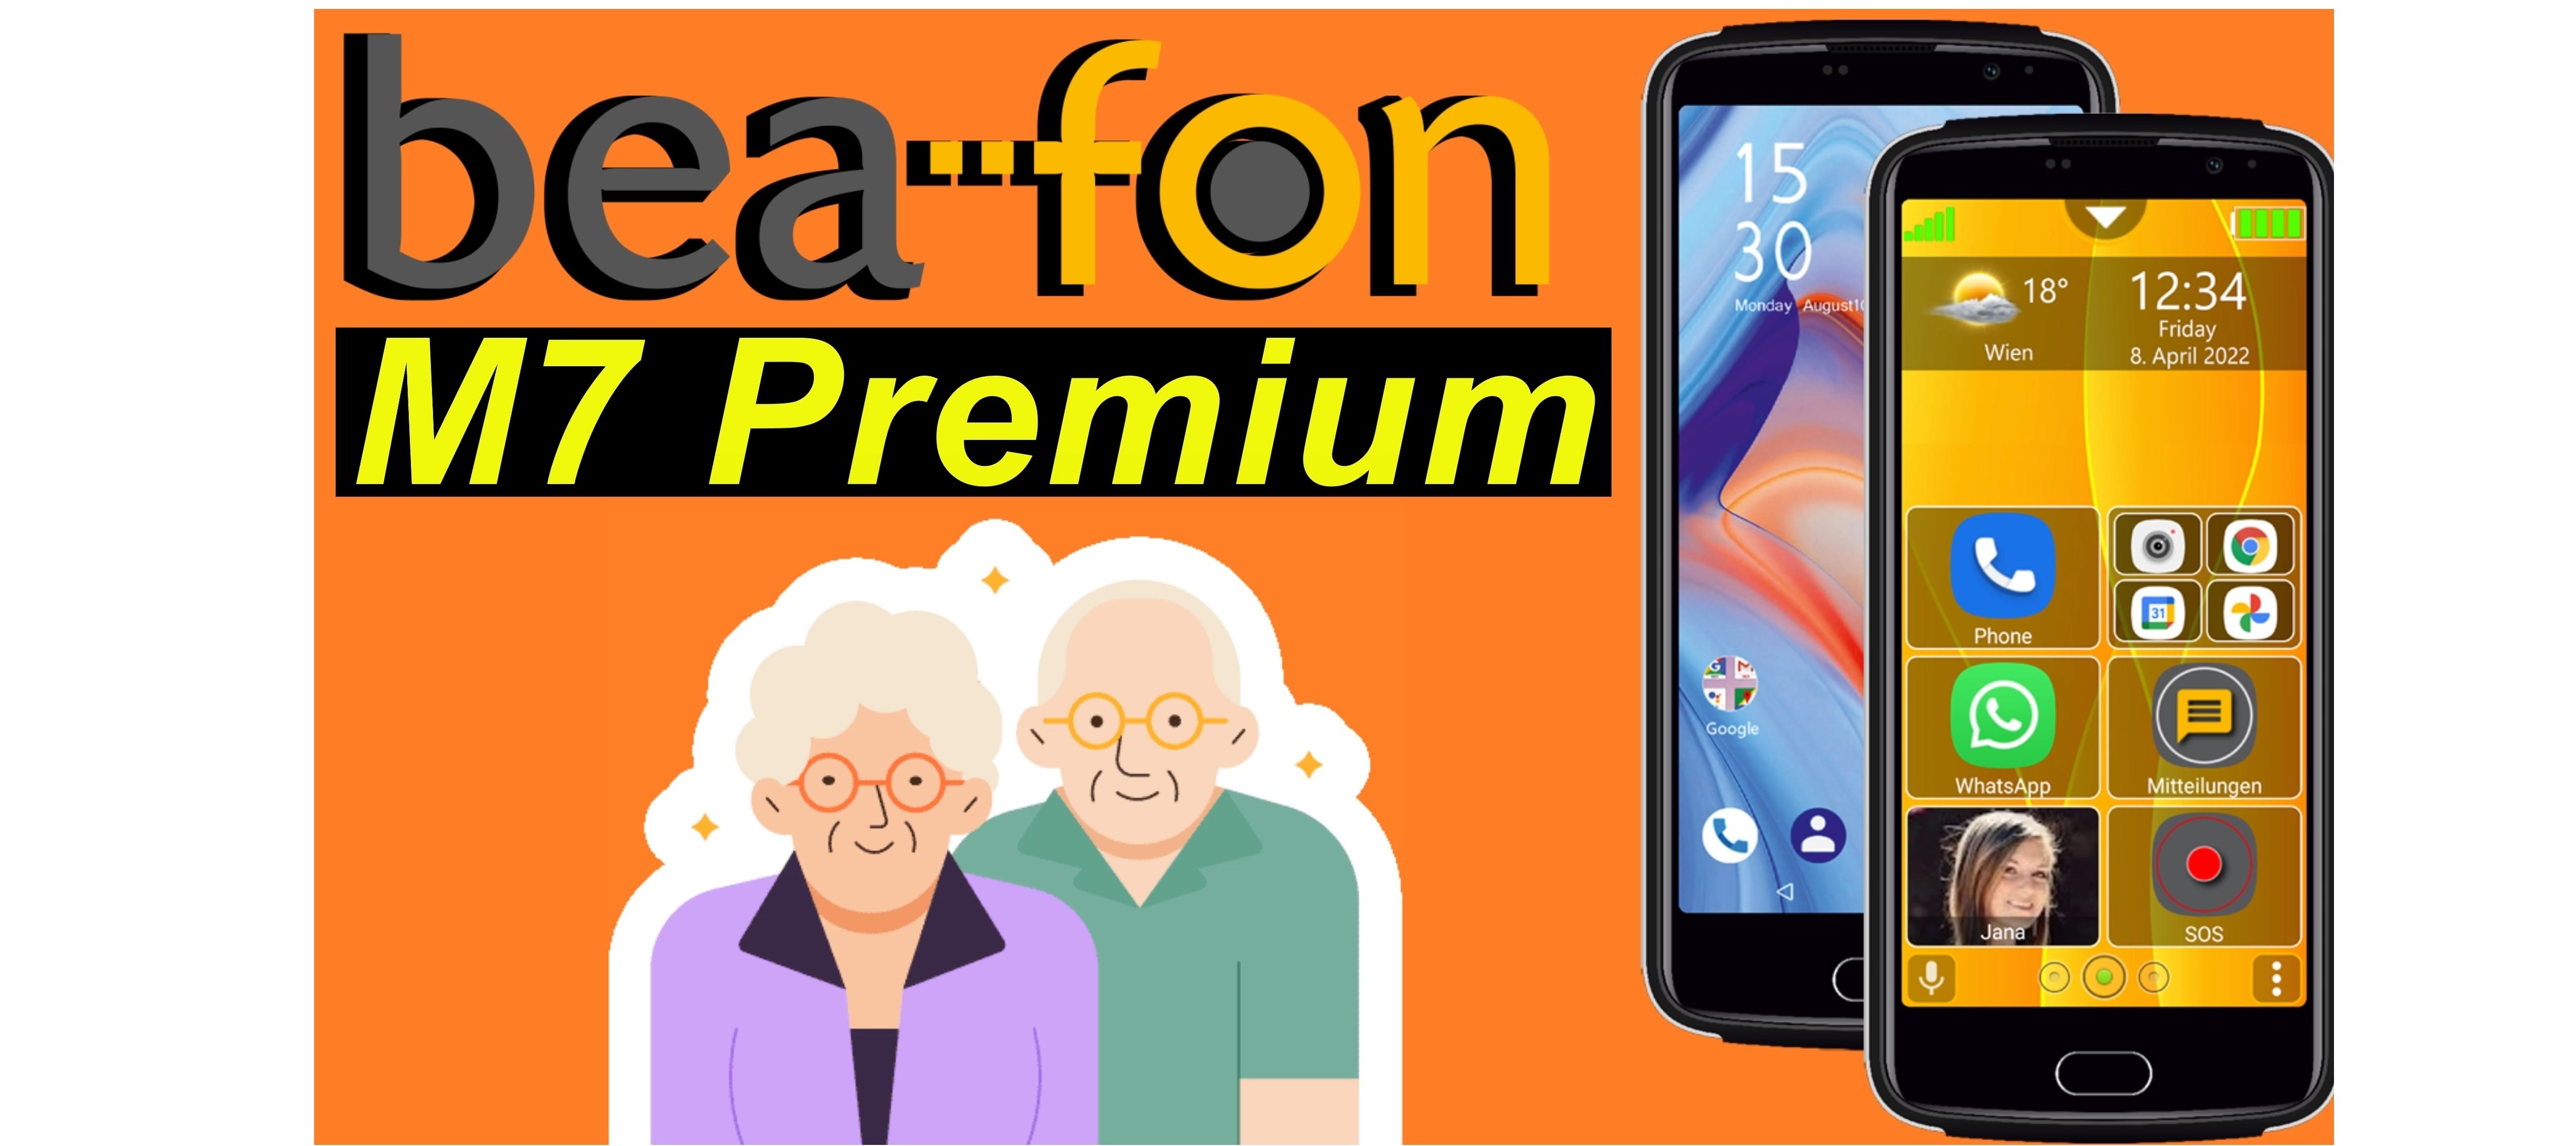 Bea-fon M7 Premium - 7 Gründe für das Senioren Smartphone